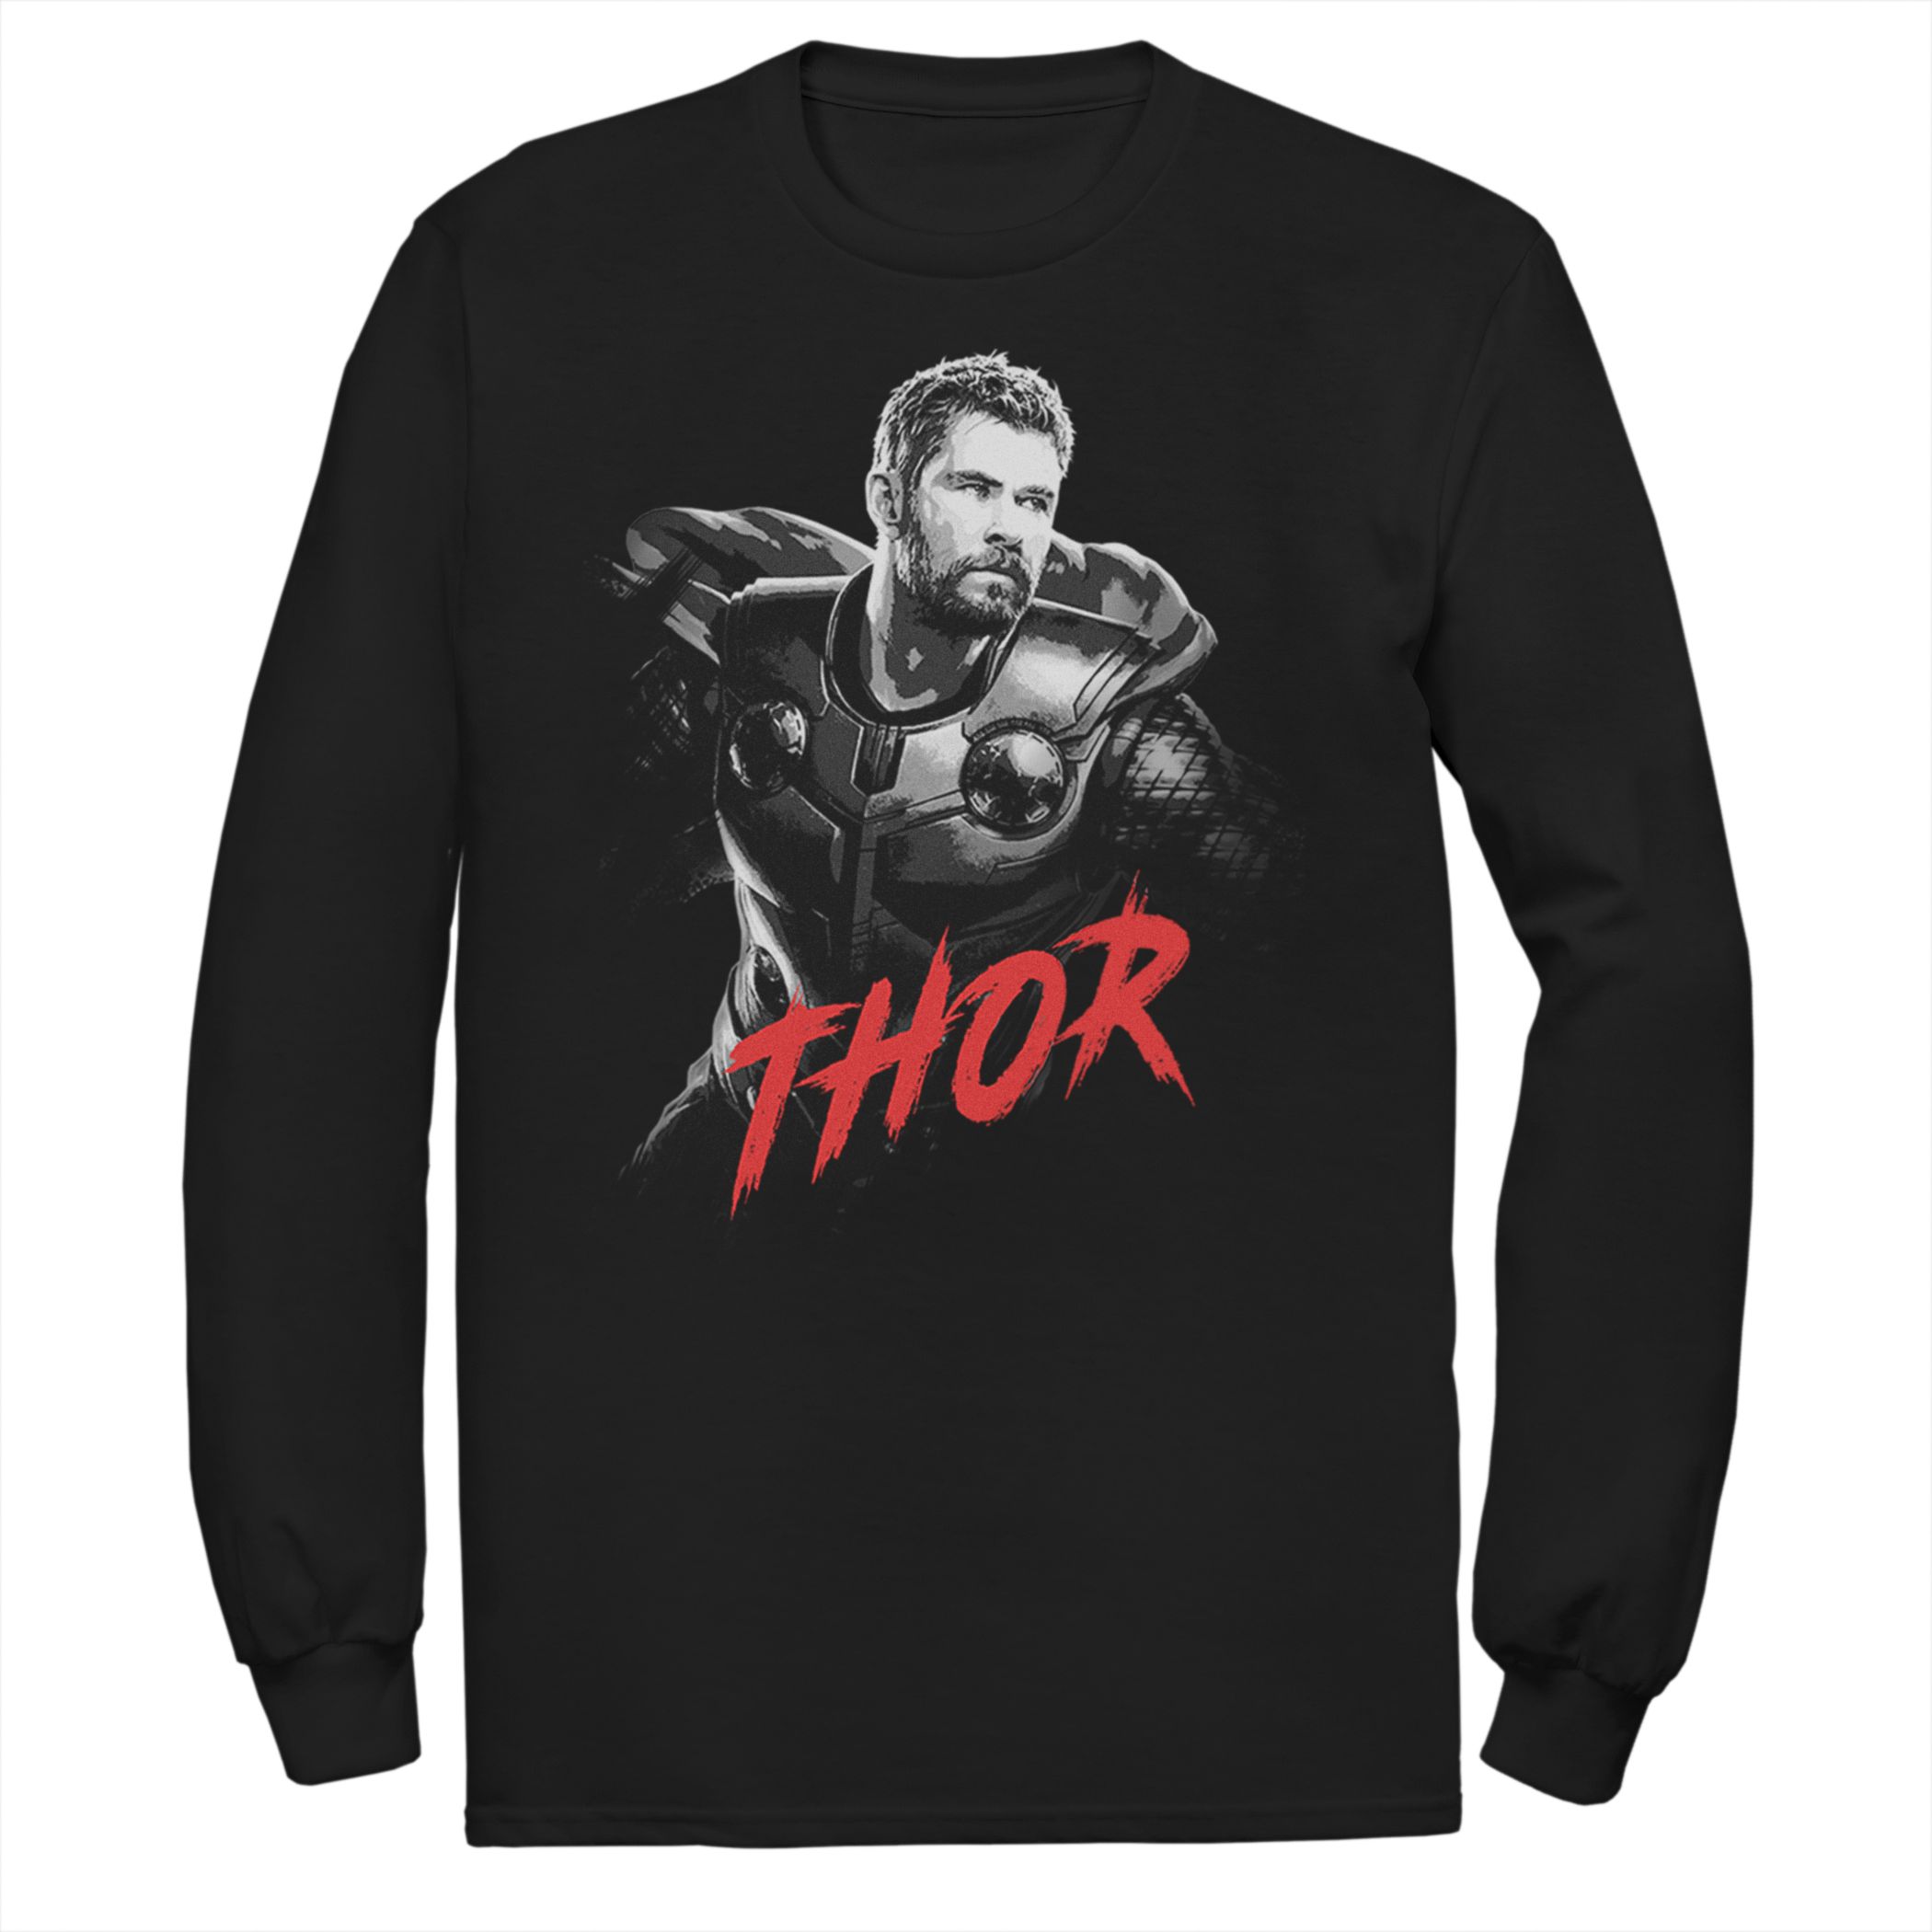 Мужская футболка Marvel Avengers Endgame Thor Licensed Character